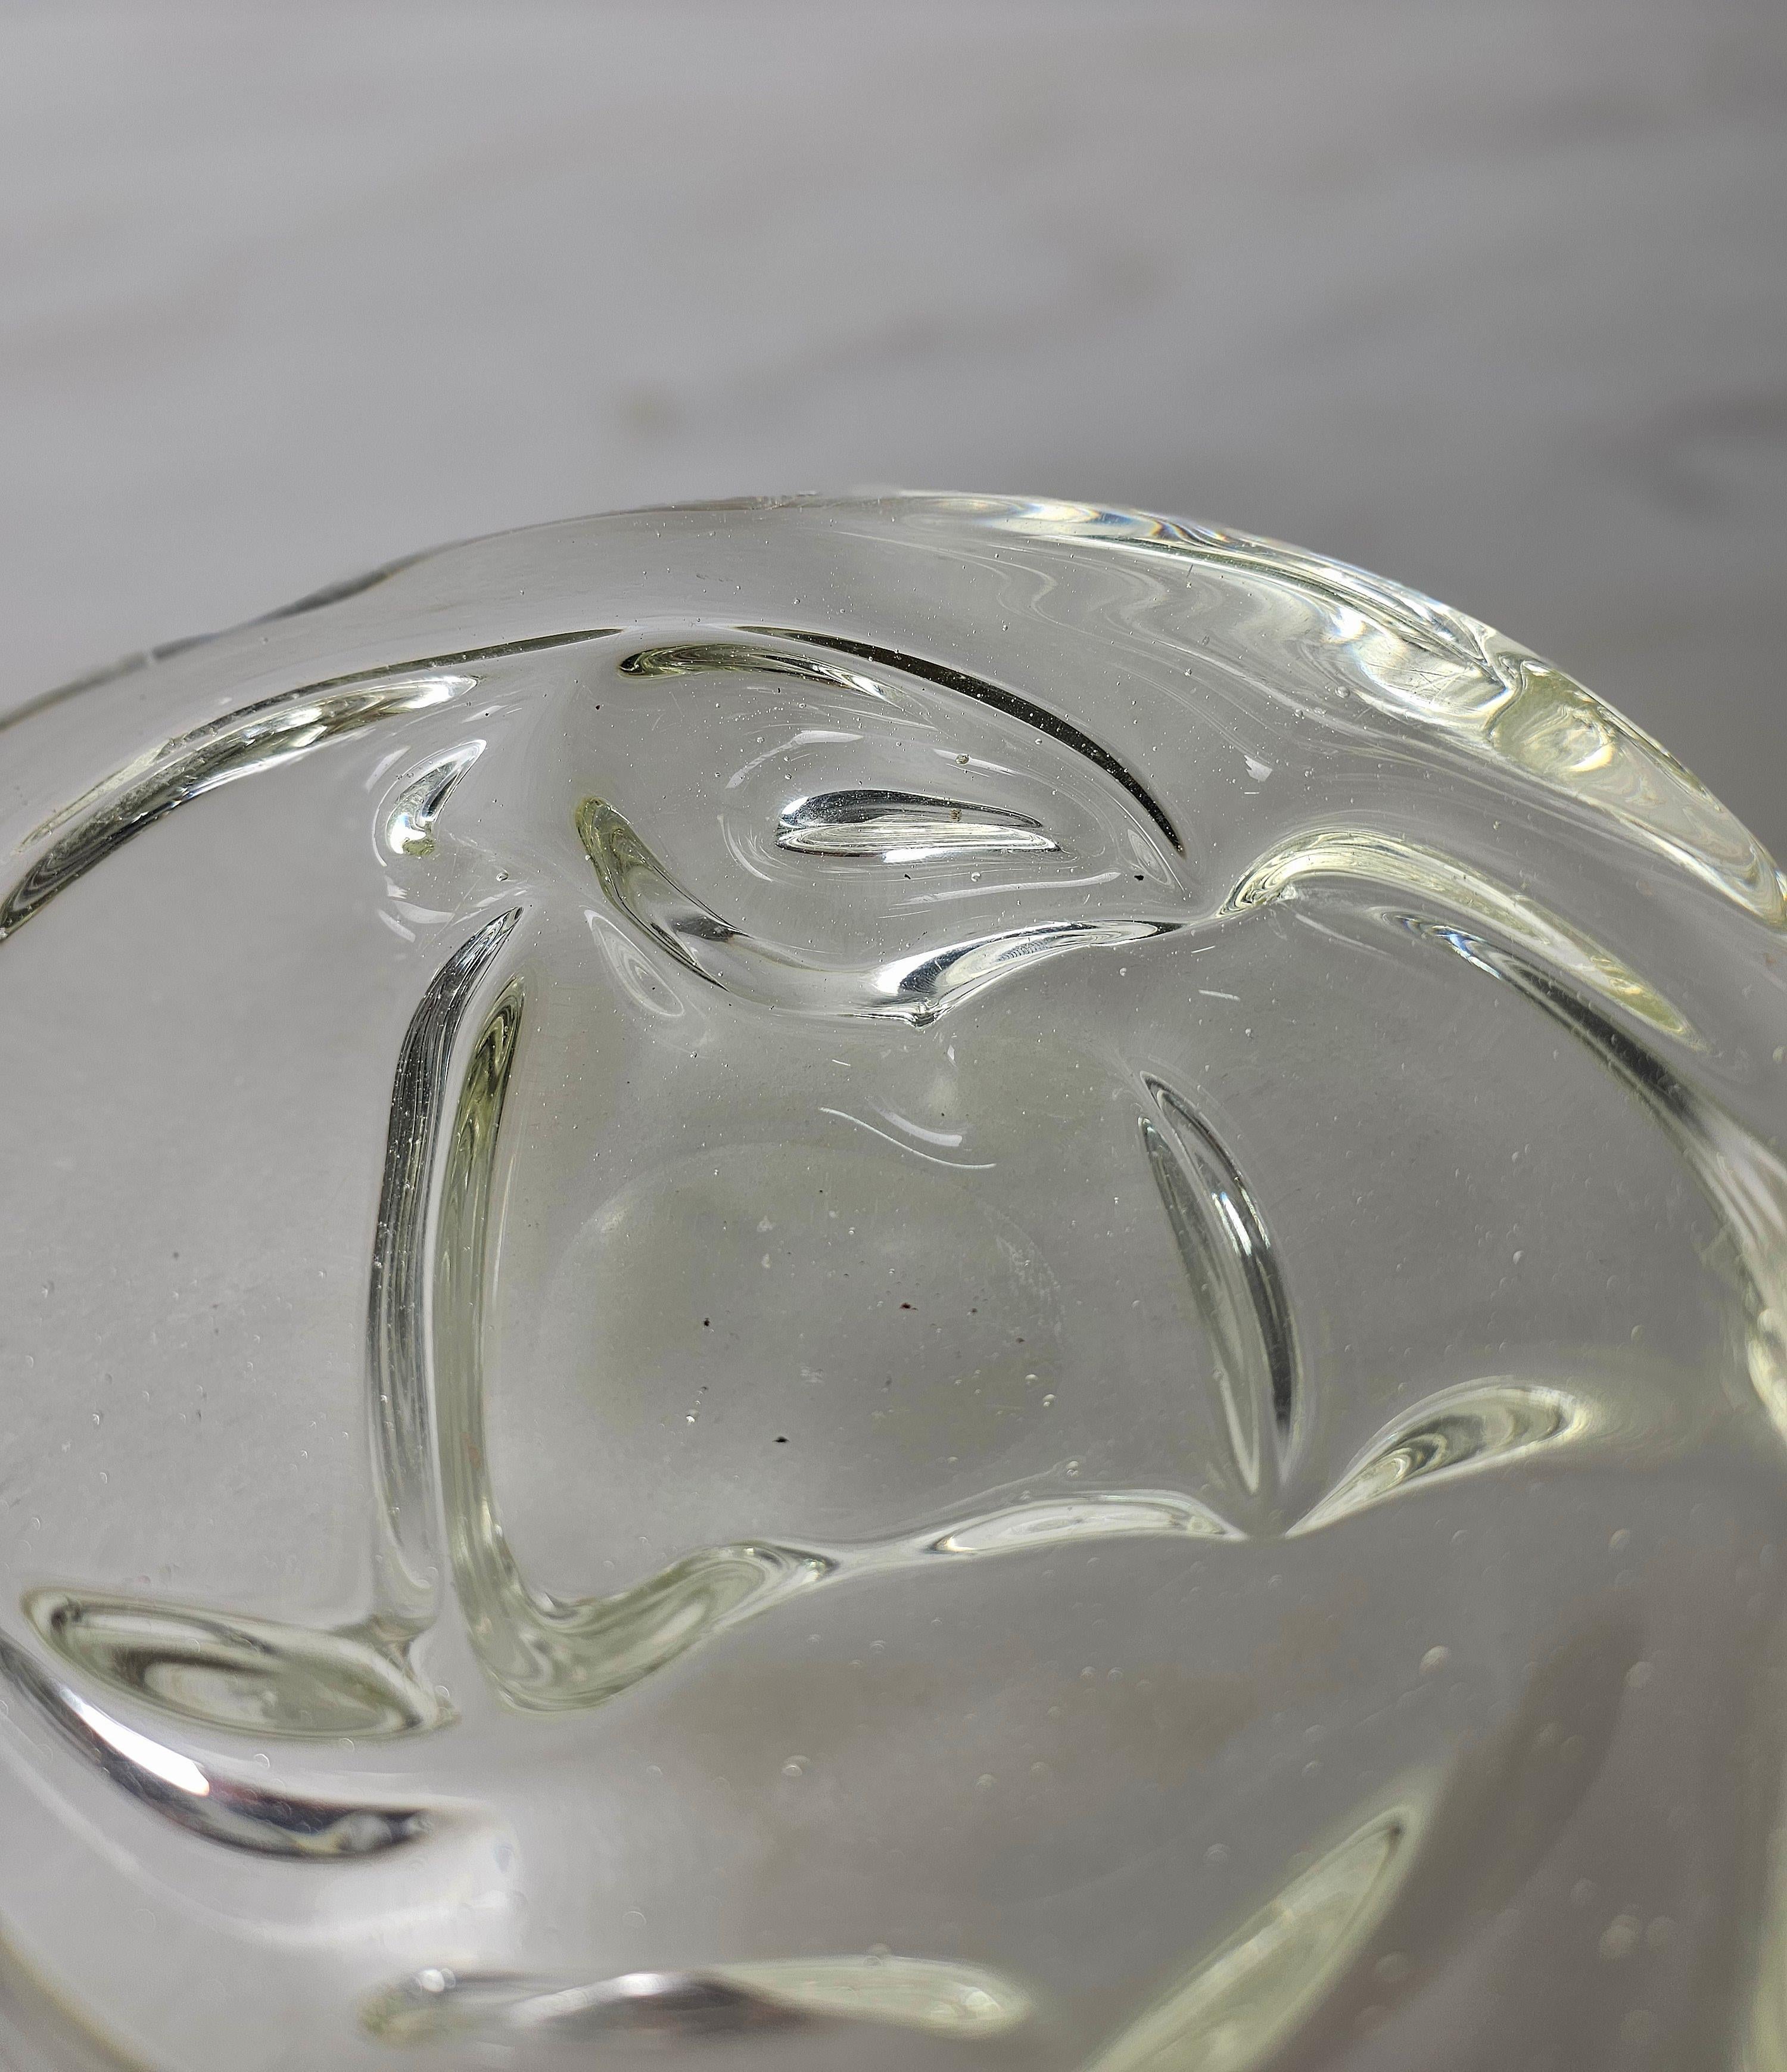 Videopoche/Dekorationsobjekt von Archimede Seguso, hergestellt in Italien in den 1950er Jahren.
Der Taschenentleerer wurde aus transparentem, massivem Murano-Glas mit einem runden Körper und äußeren Ausstülpungen hergestellt.



Hinweis: Wir bemühen